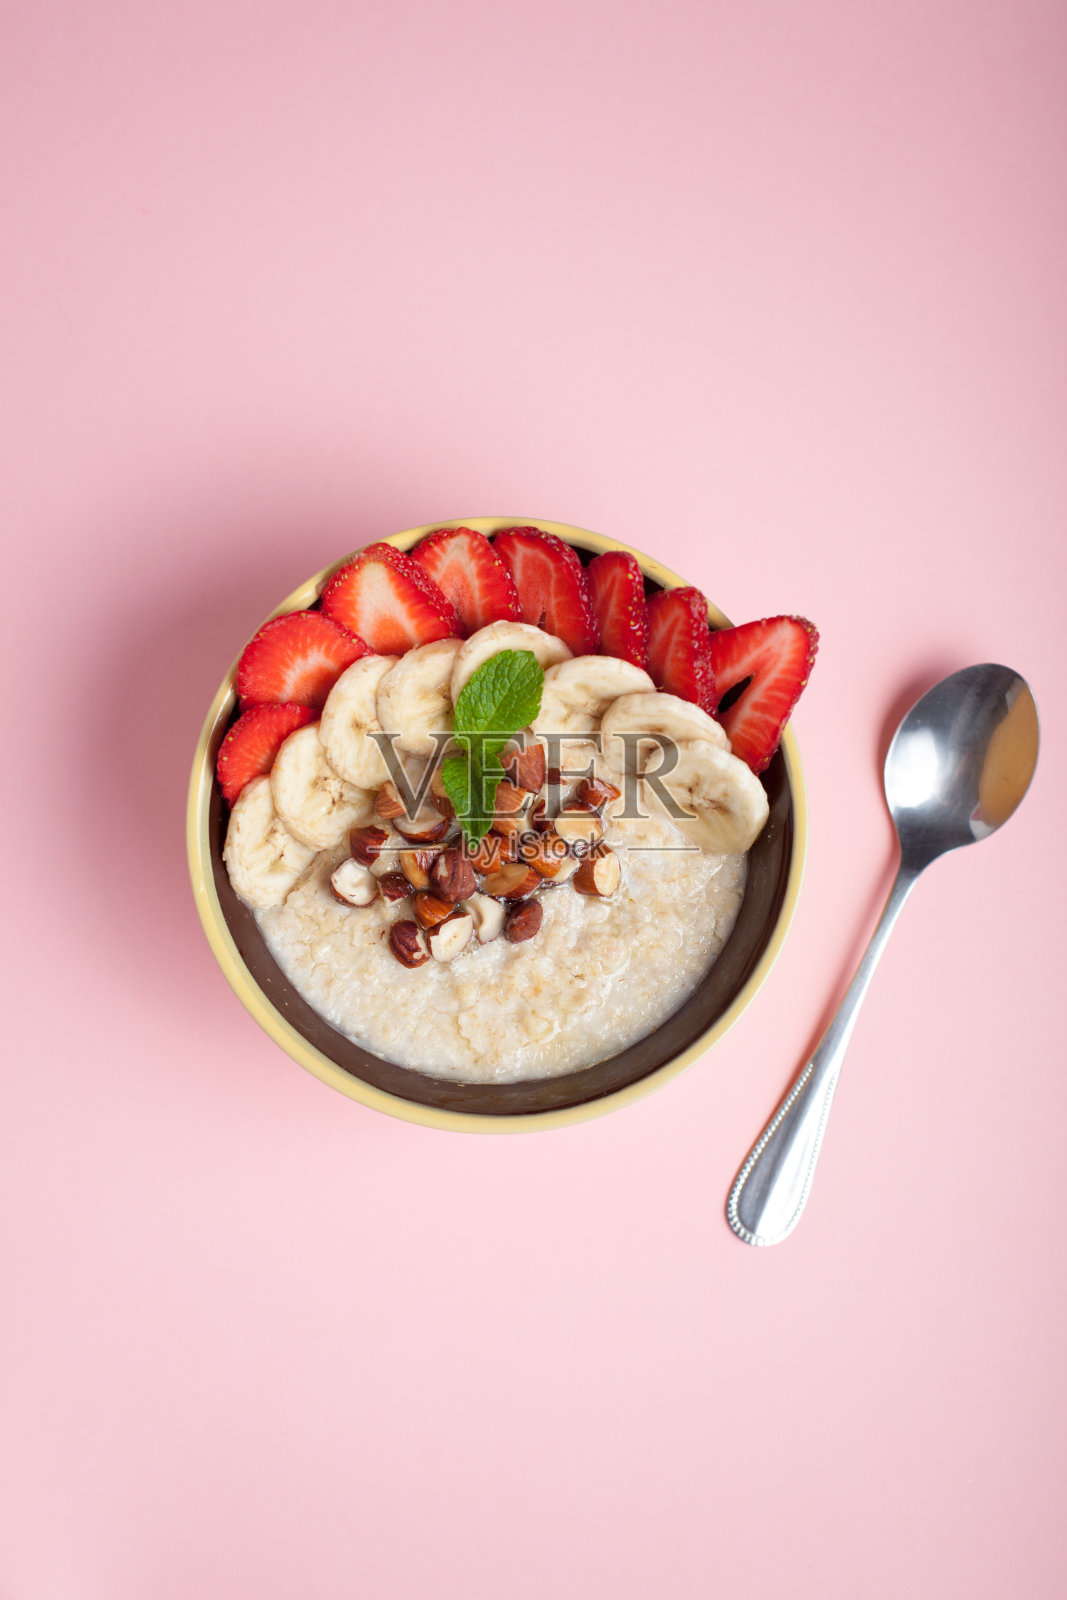 一碗有香蕉、草莓、杏仁、榛子和奶油的粉色燕麦粥。热腾腾的健康早餐，俯视图照片摄影图片